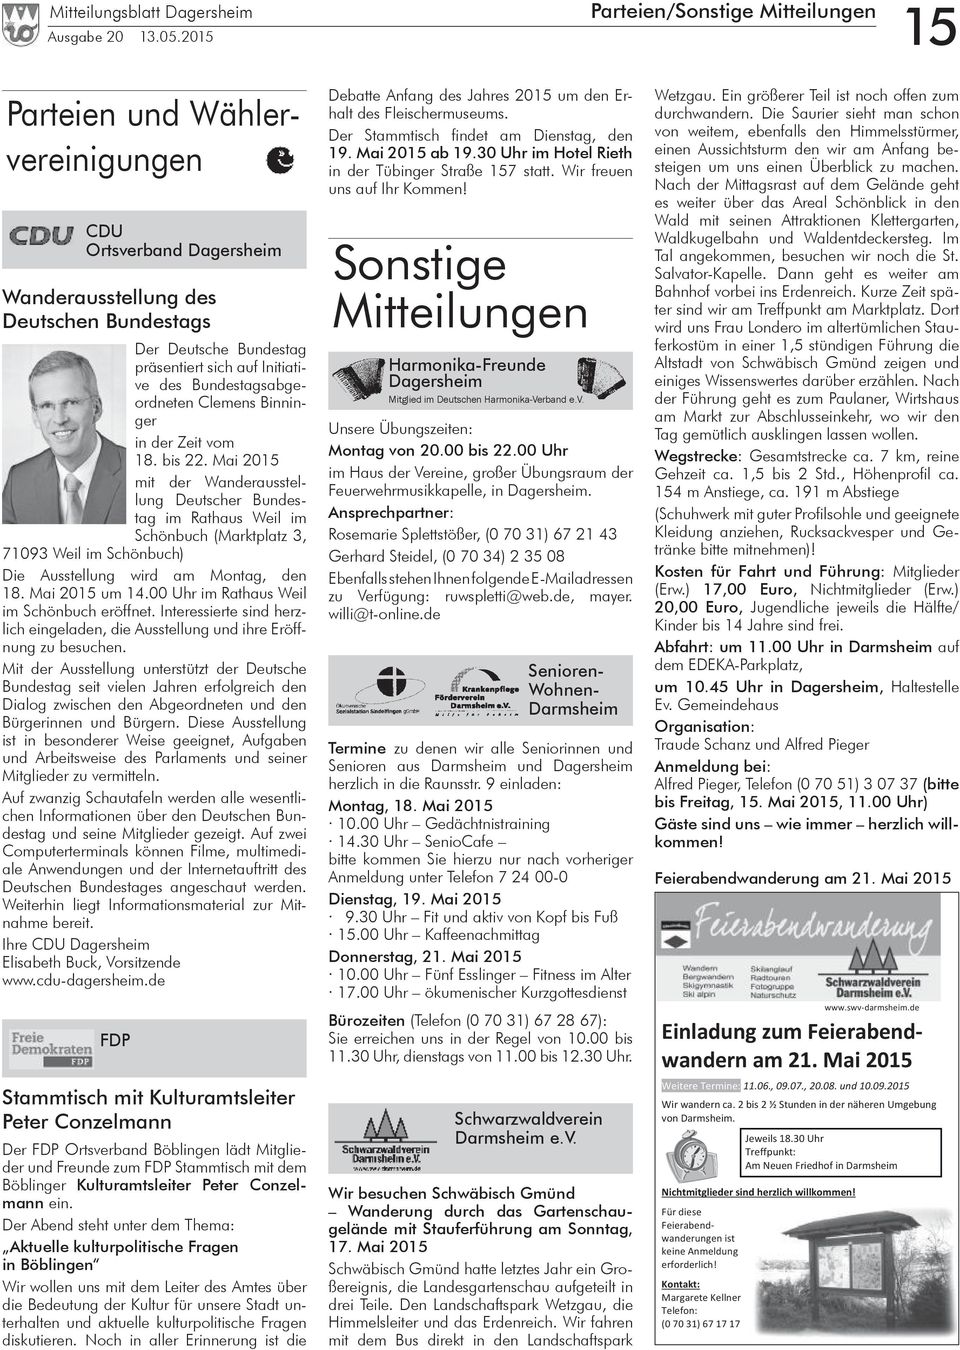 Mai 2015 mit der Wanderausstellung Deutscher Bundestag im Rathaus Weil im Schönbuch (Marktplatz 3, 71093 Weil im Schönbuch) Die Ausstellung wird am Montag, den 18. Mai 2015 um 14.